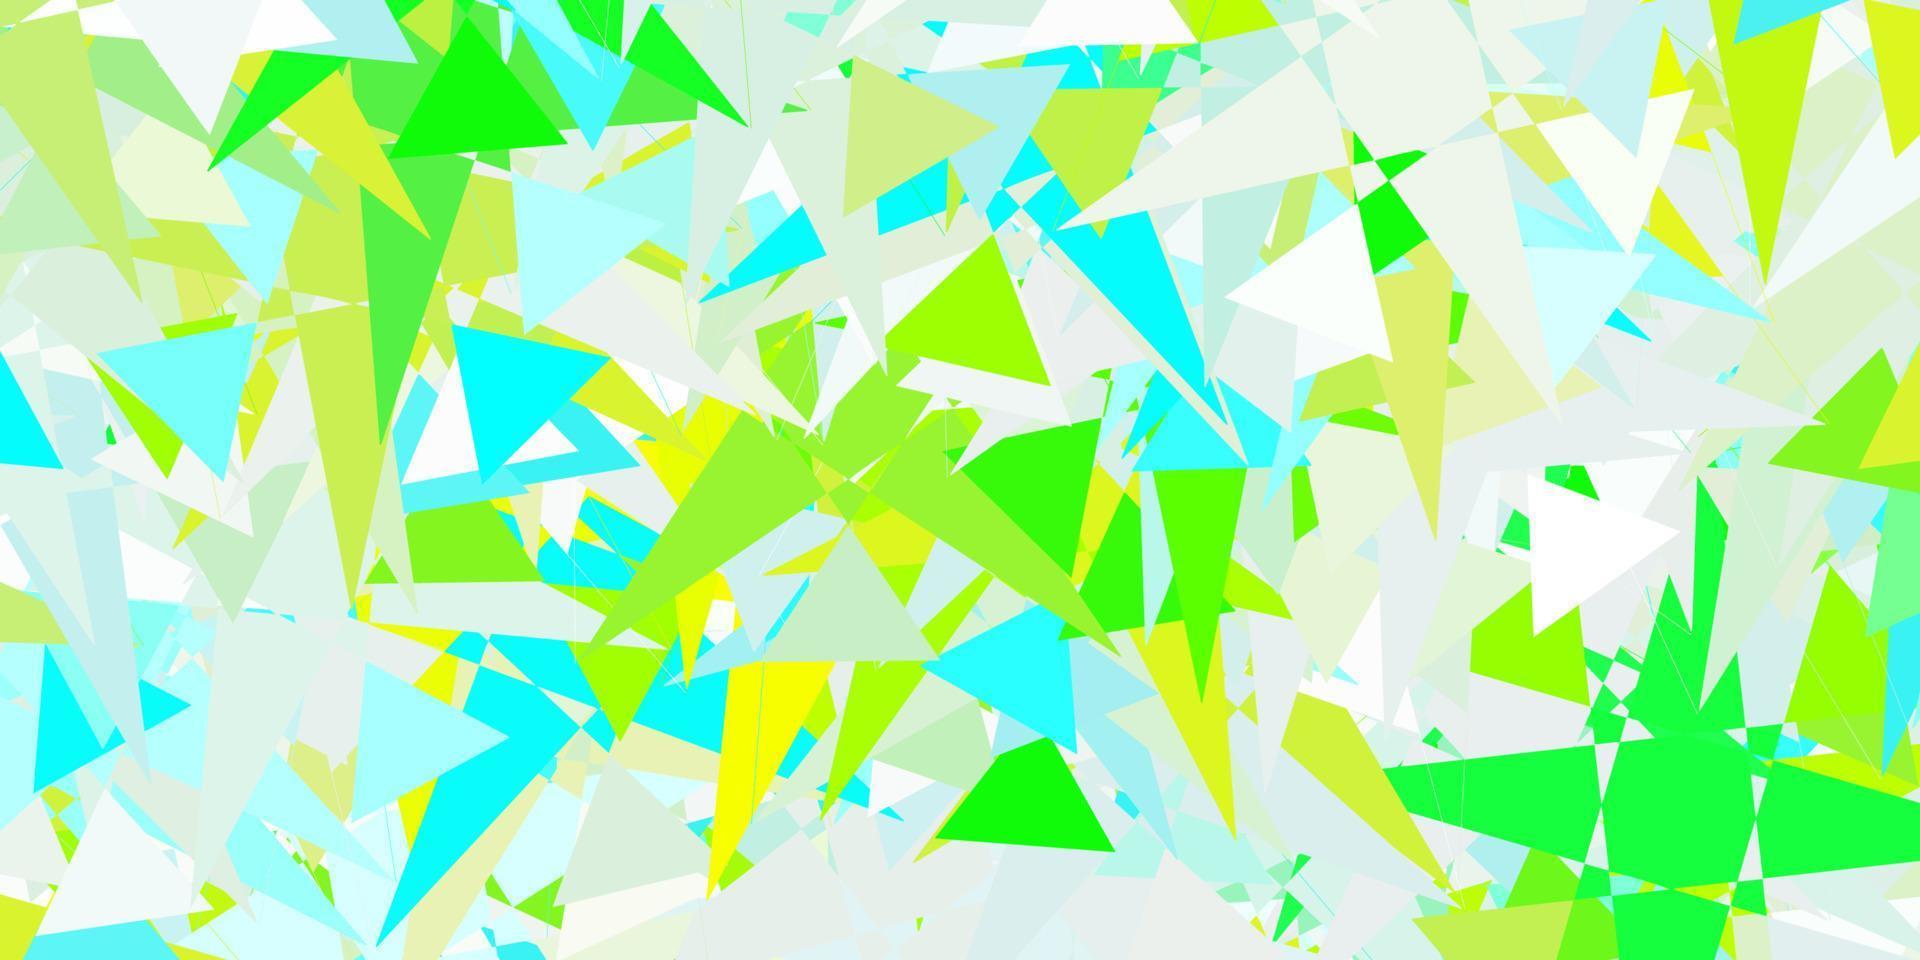 ljusblått, grönt vektormönster med månghörniga former. vektor